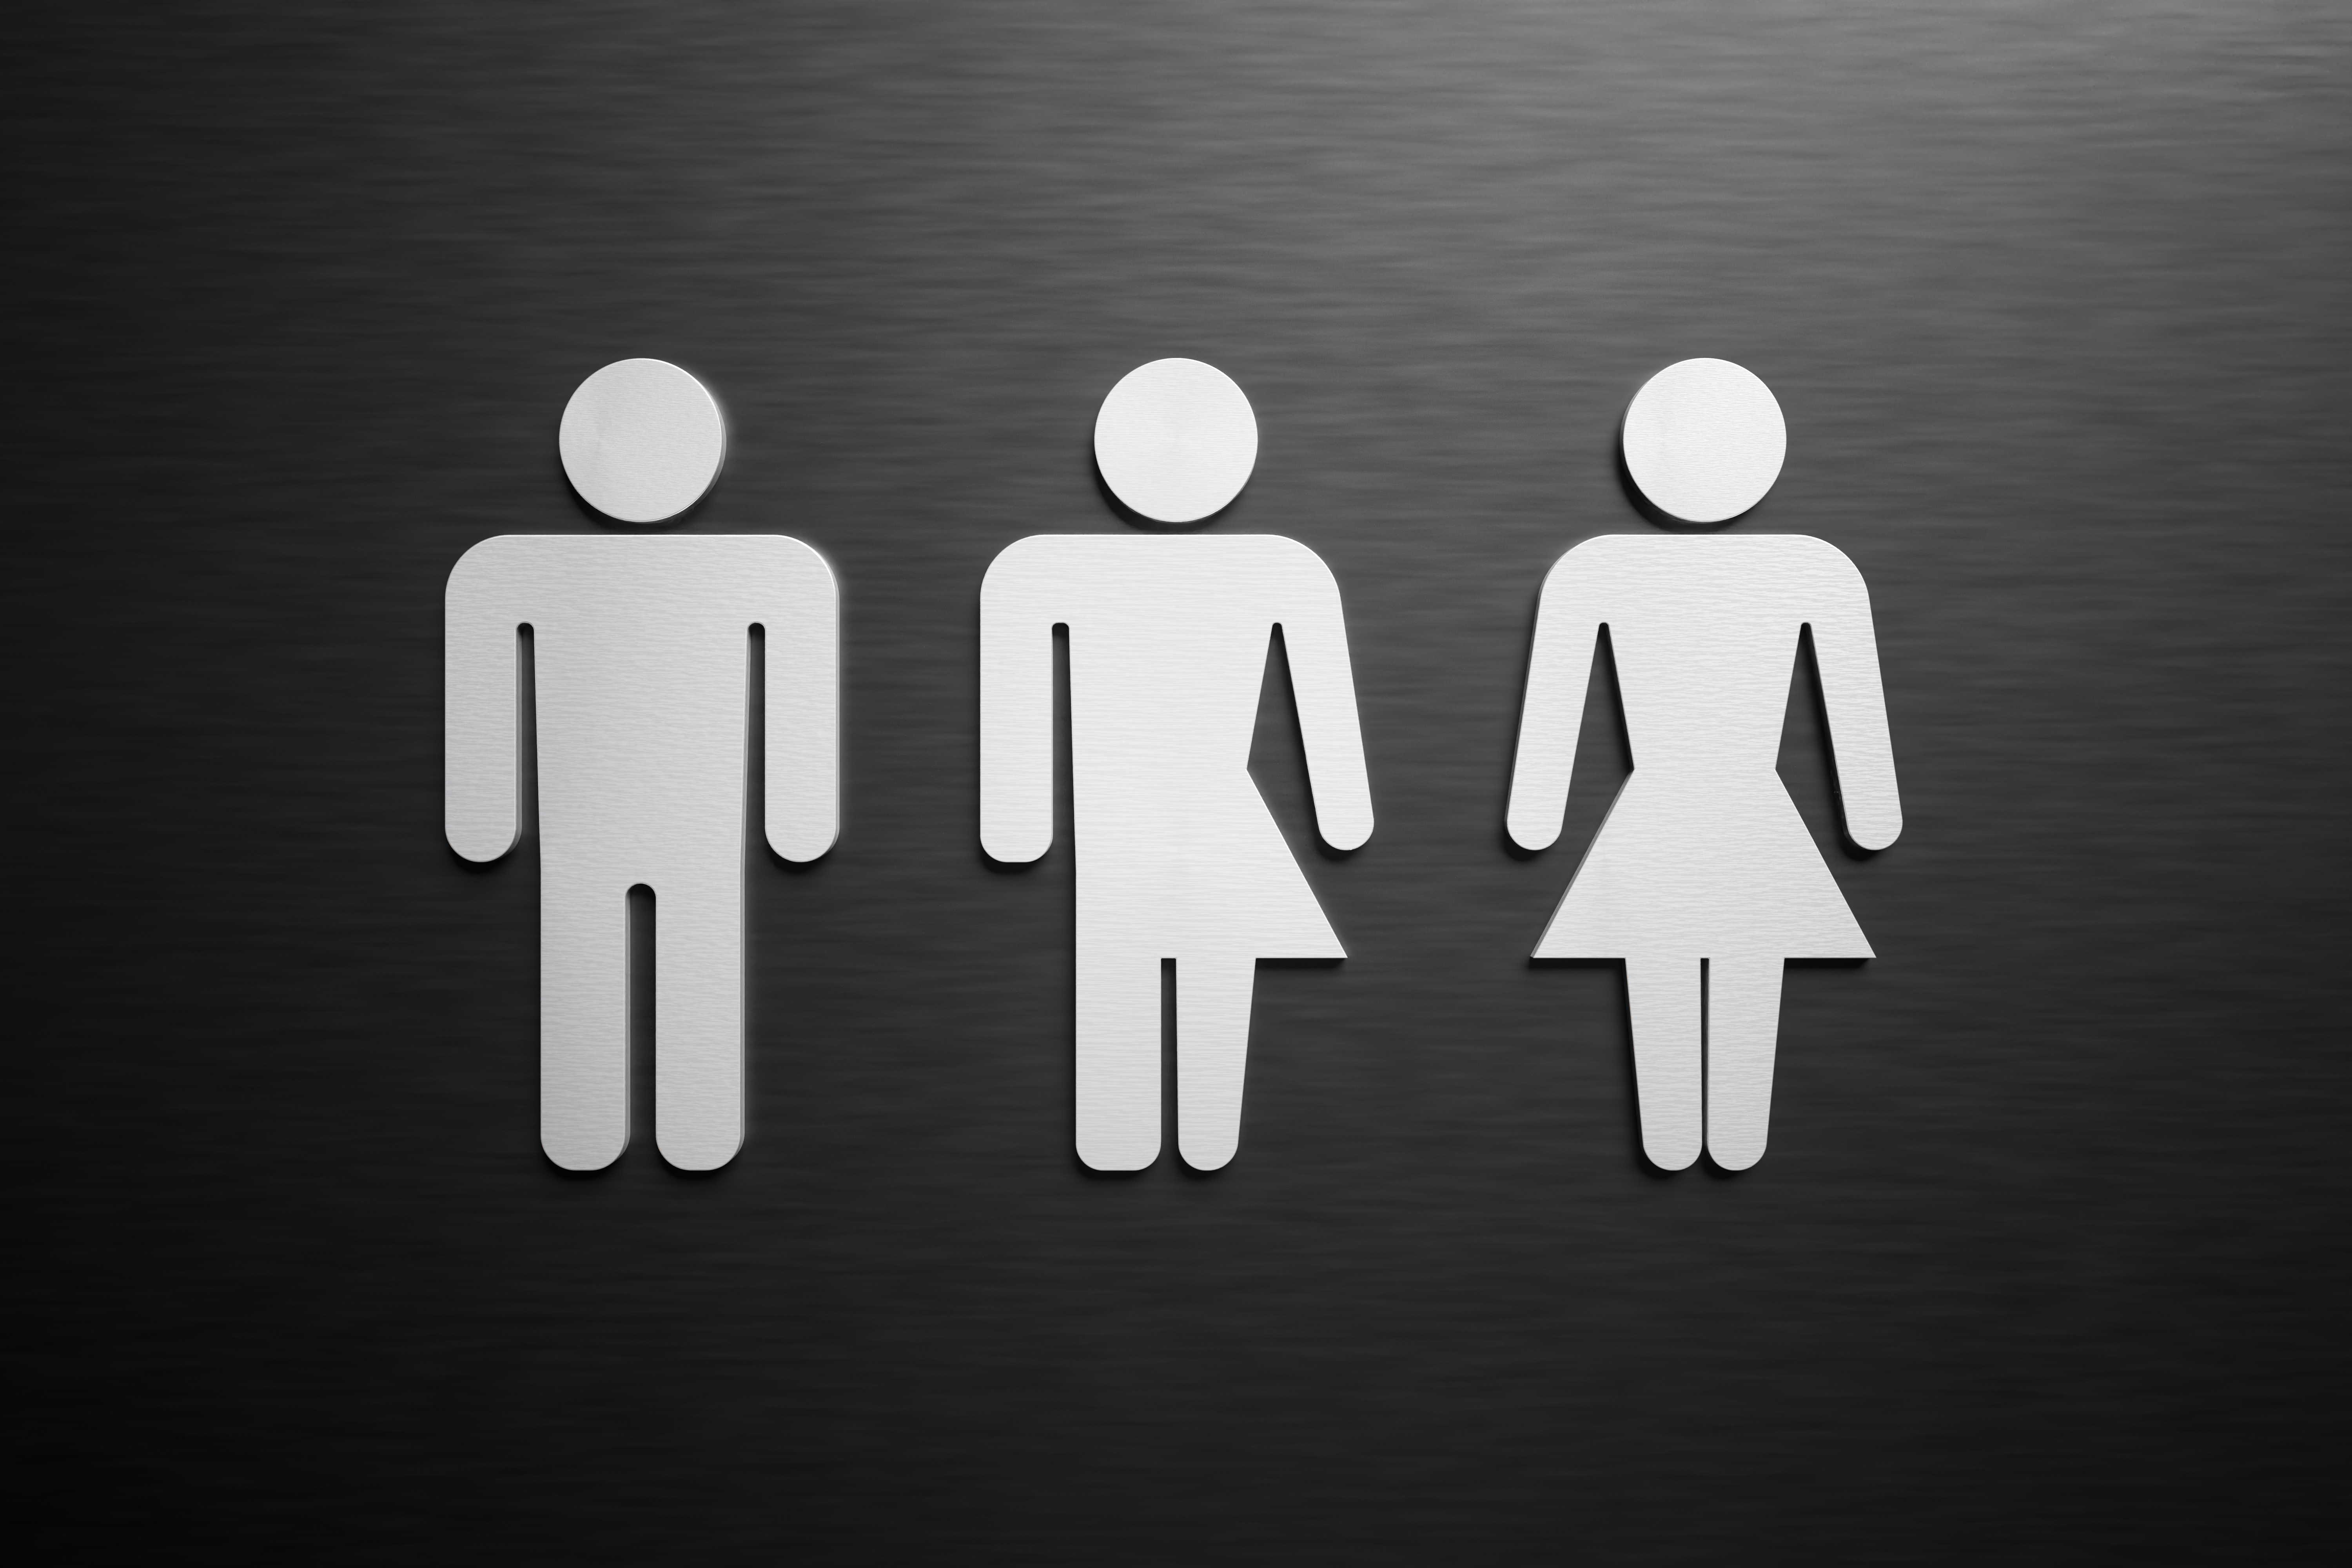 Symboles des toilettes pour masculin, féminin et un troisième sexe. © Vchalup, Adobe Stock